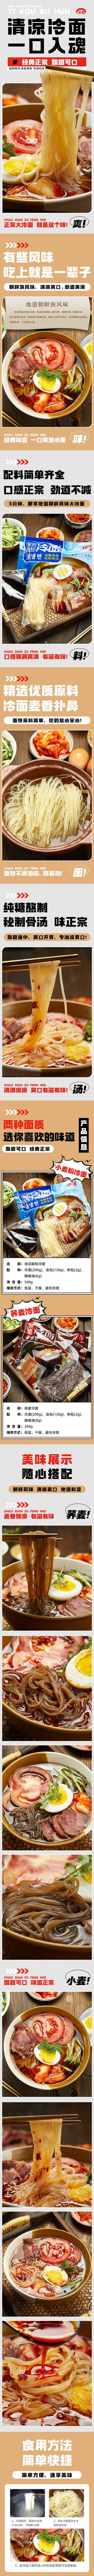 南门网 电商详情页 淘宝详情页 食品 冷面 韩式美味 速食食品